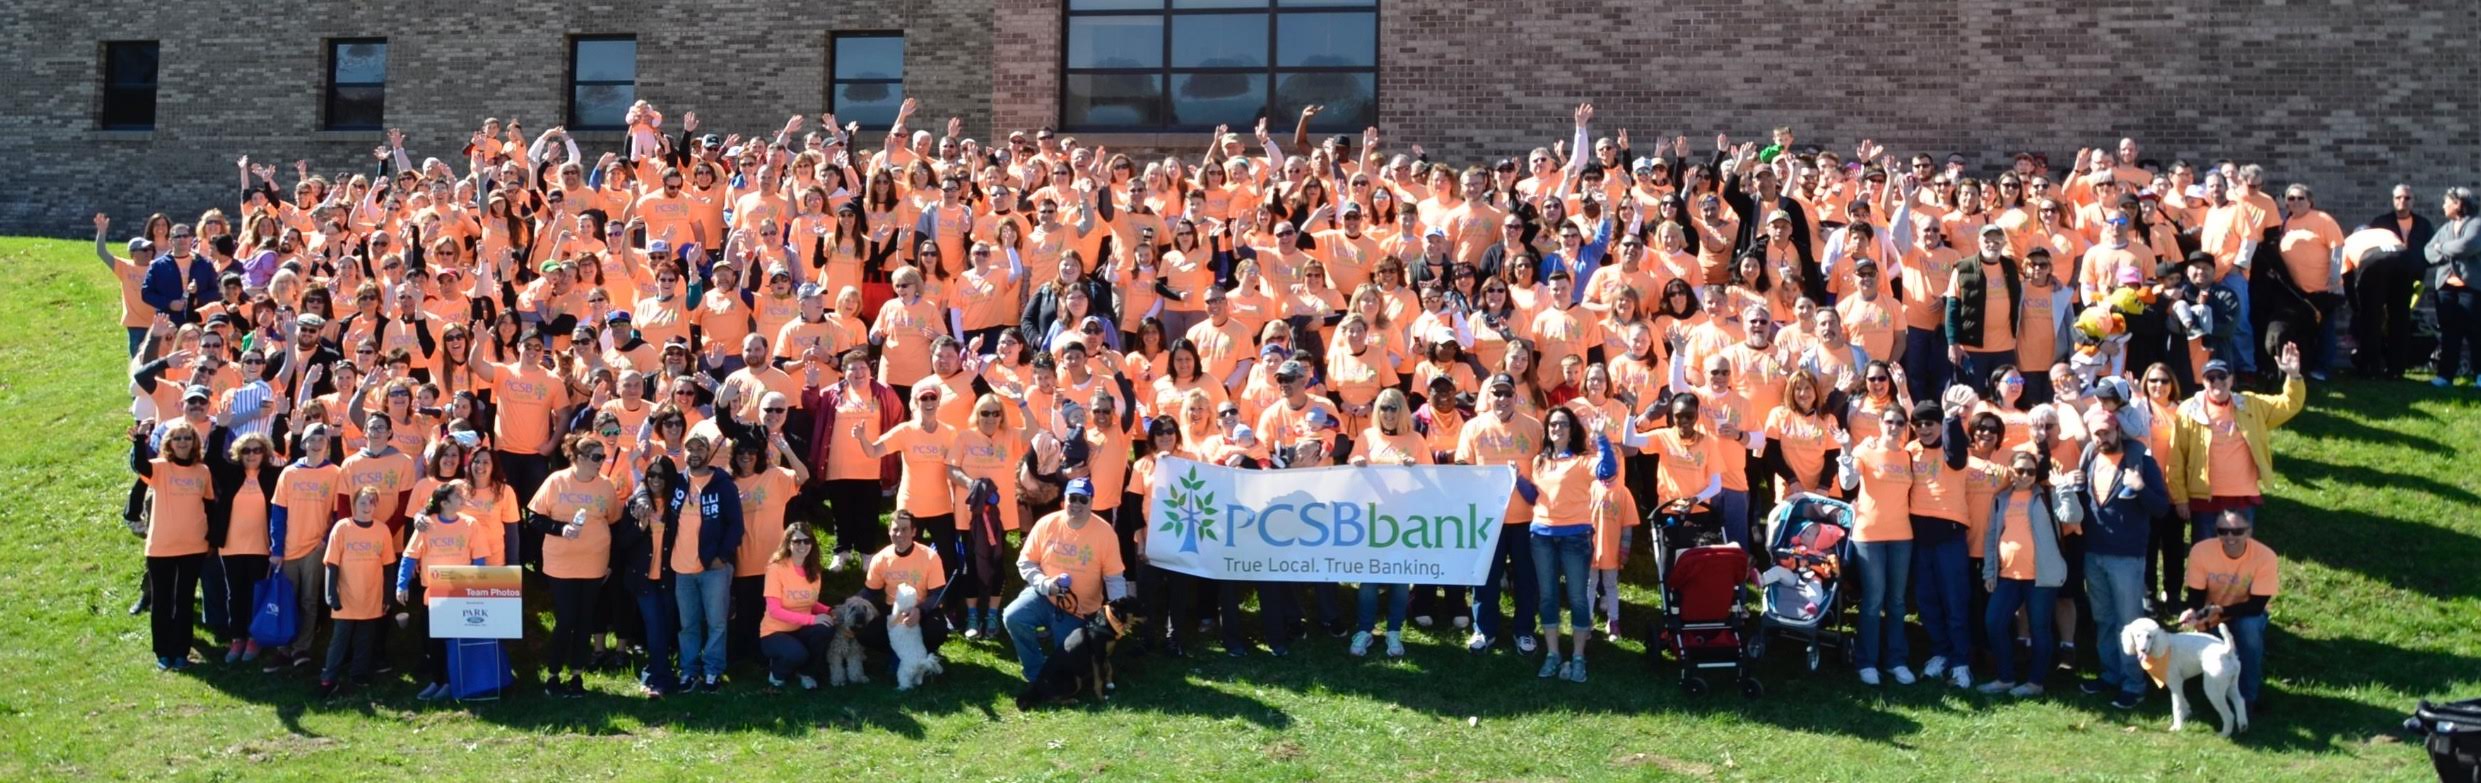 PCSB BANK HELPS LEAD HEART WALK